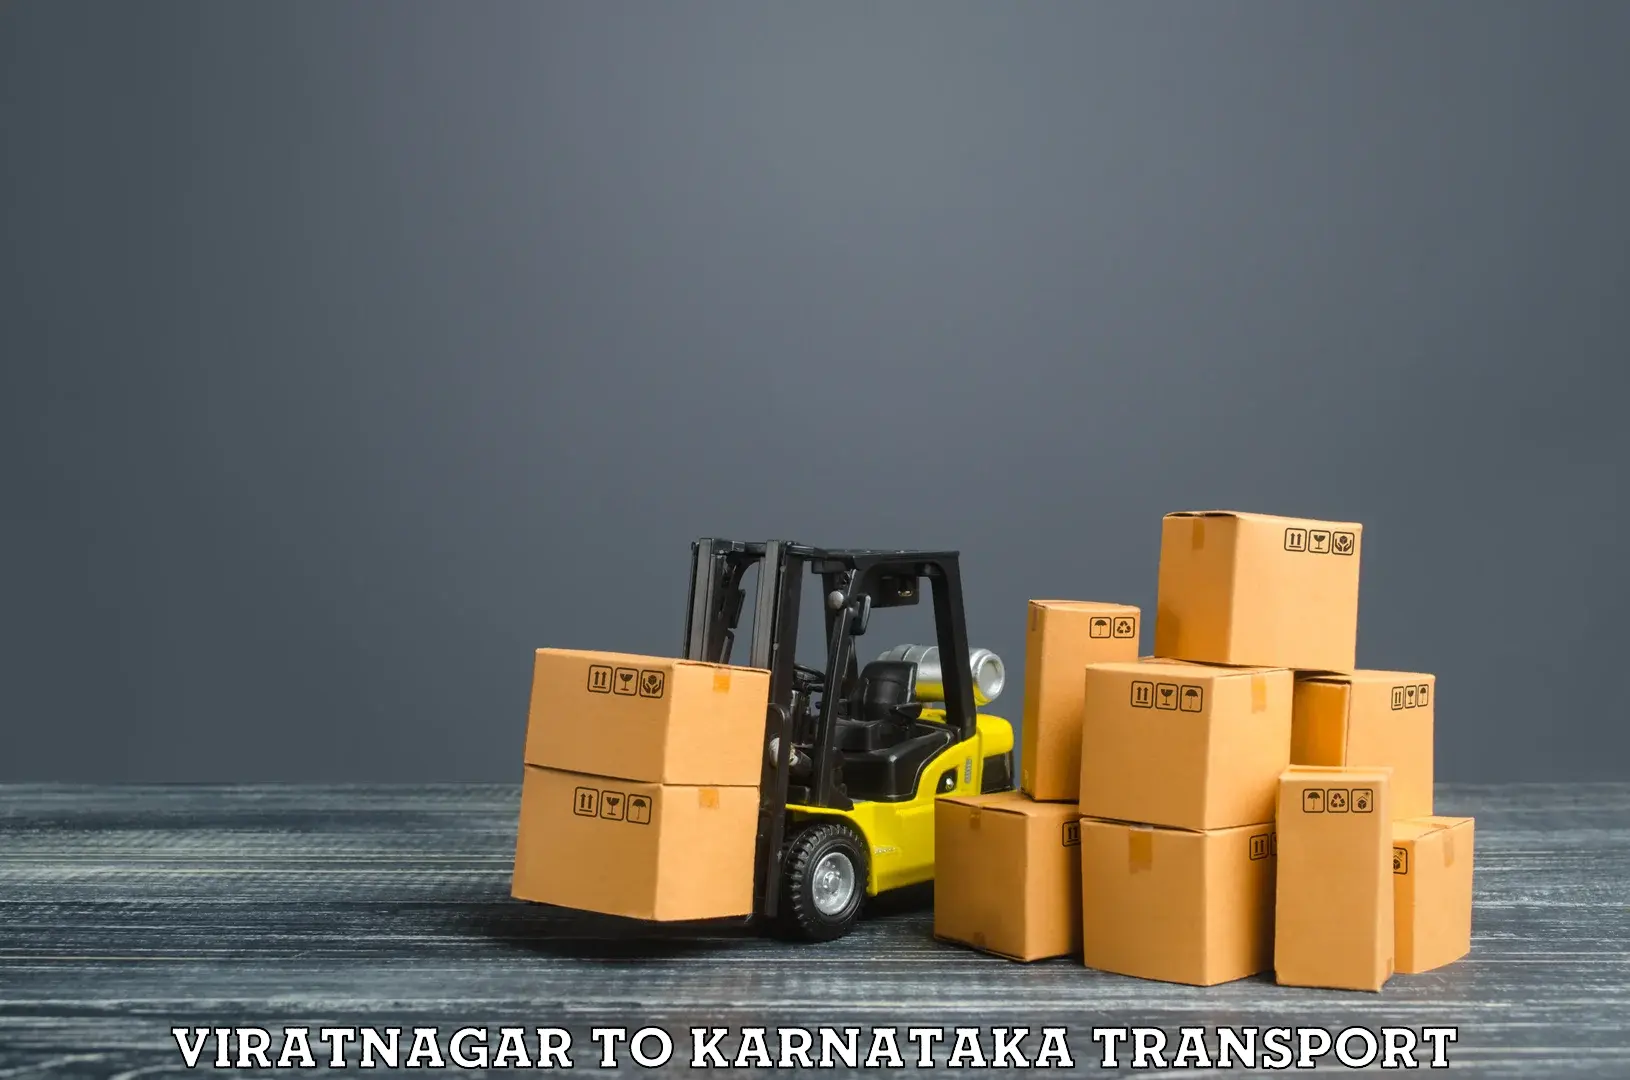 Shipping partner Viratnagar to Chitradurga